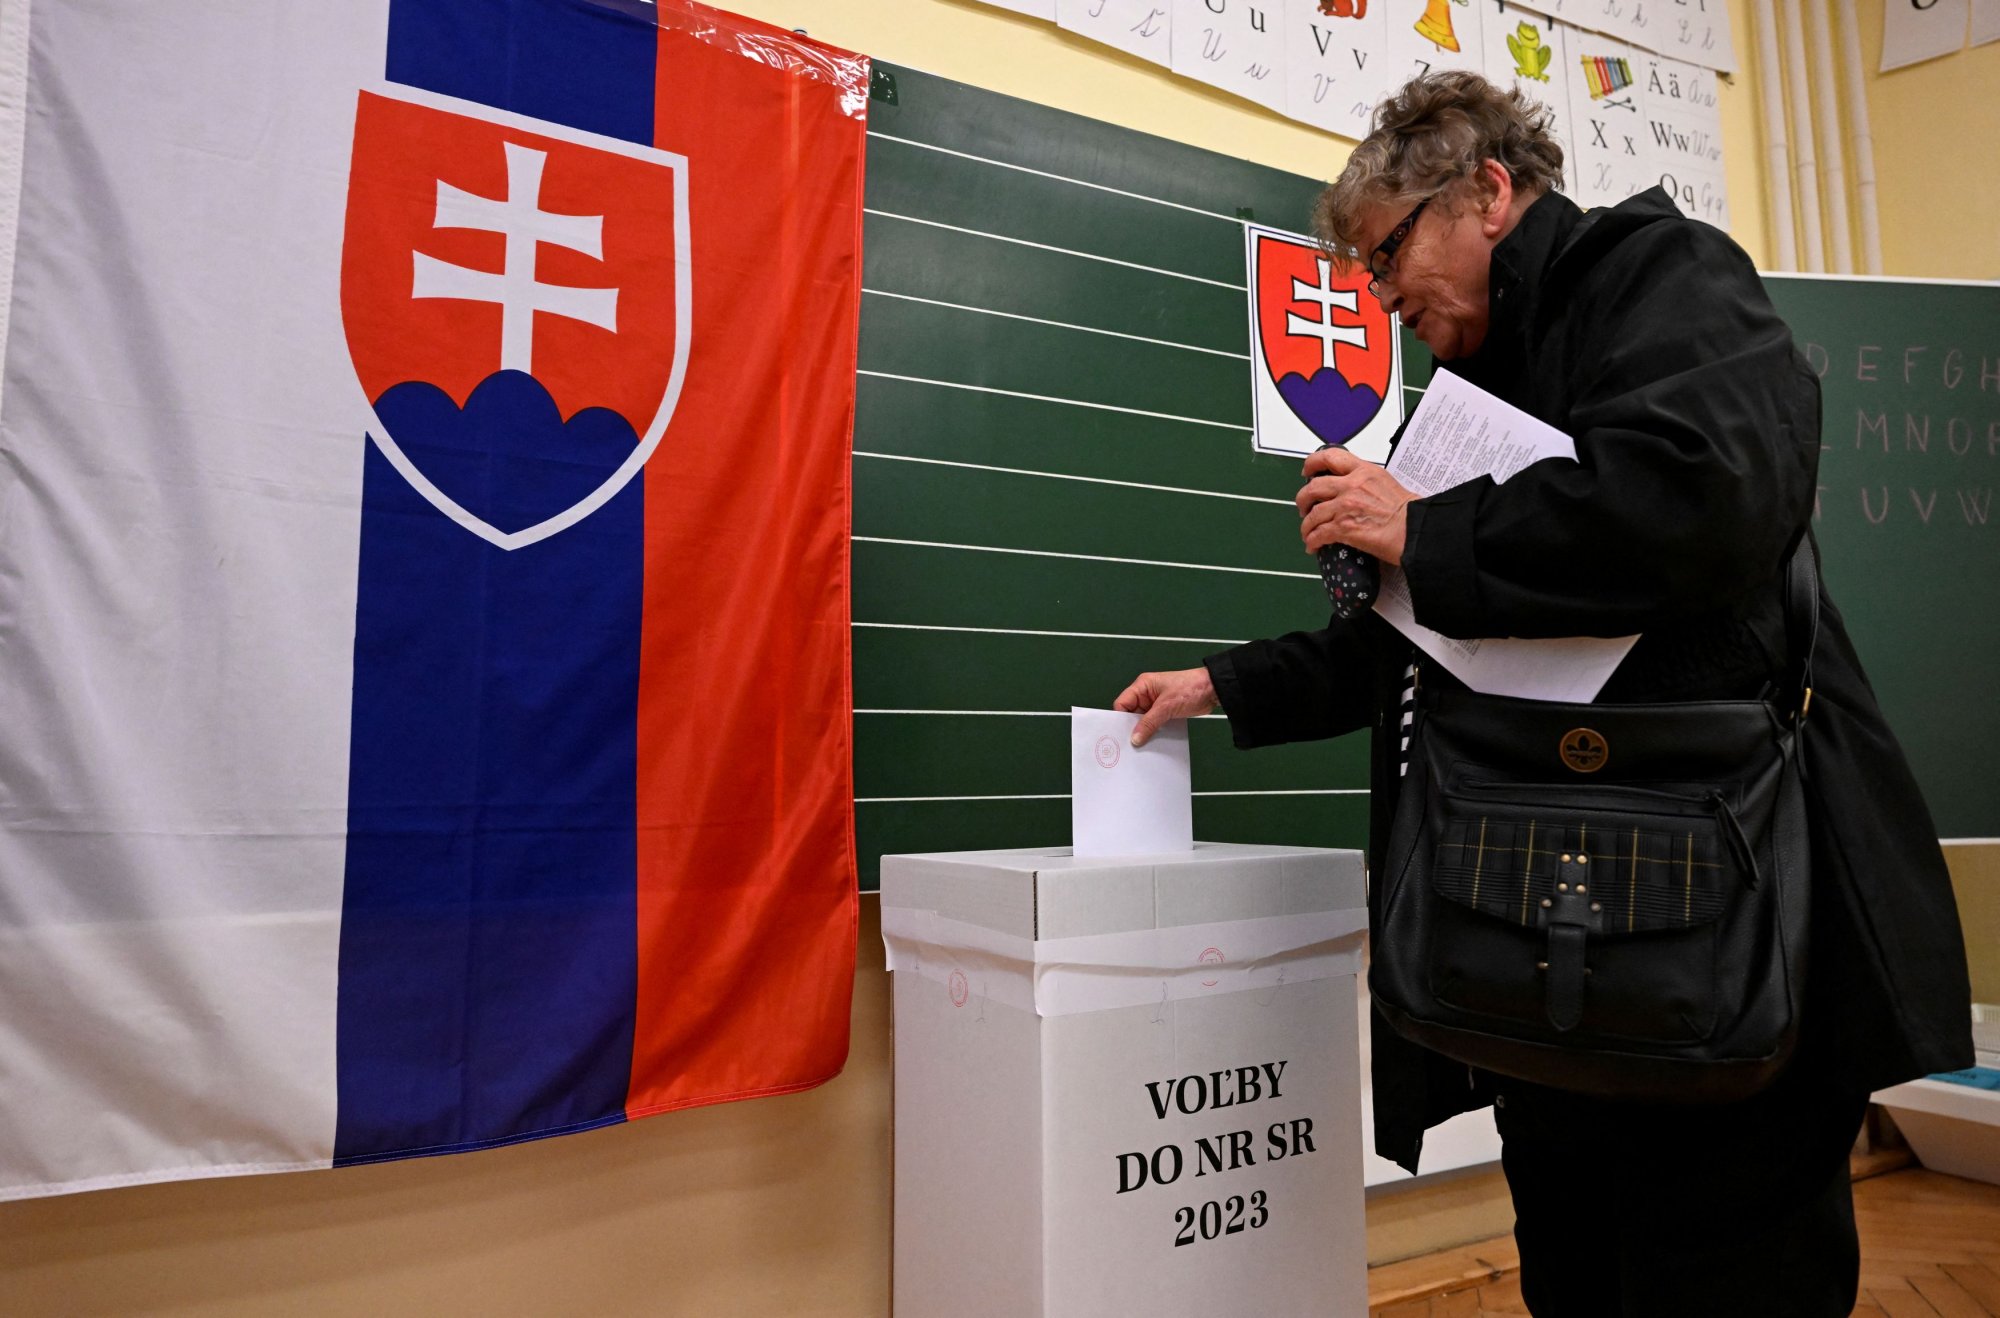 Σλοβακία: Εκλογές και διχασμός στη σκιά του πολέμου στην Ουκρανία